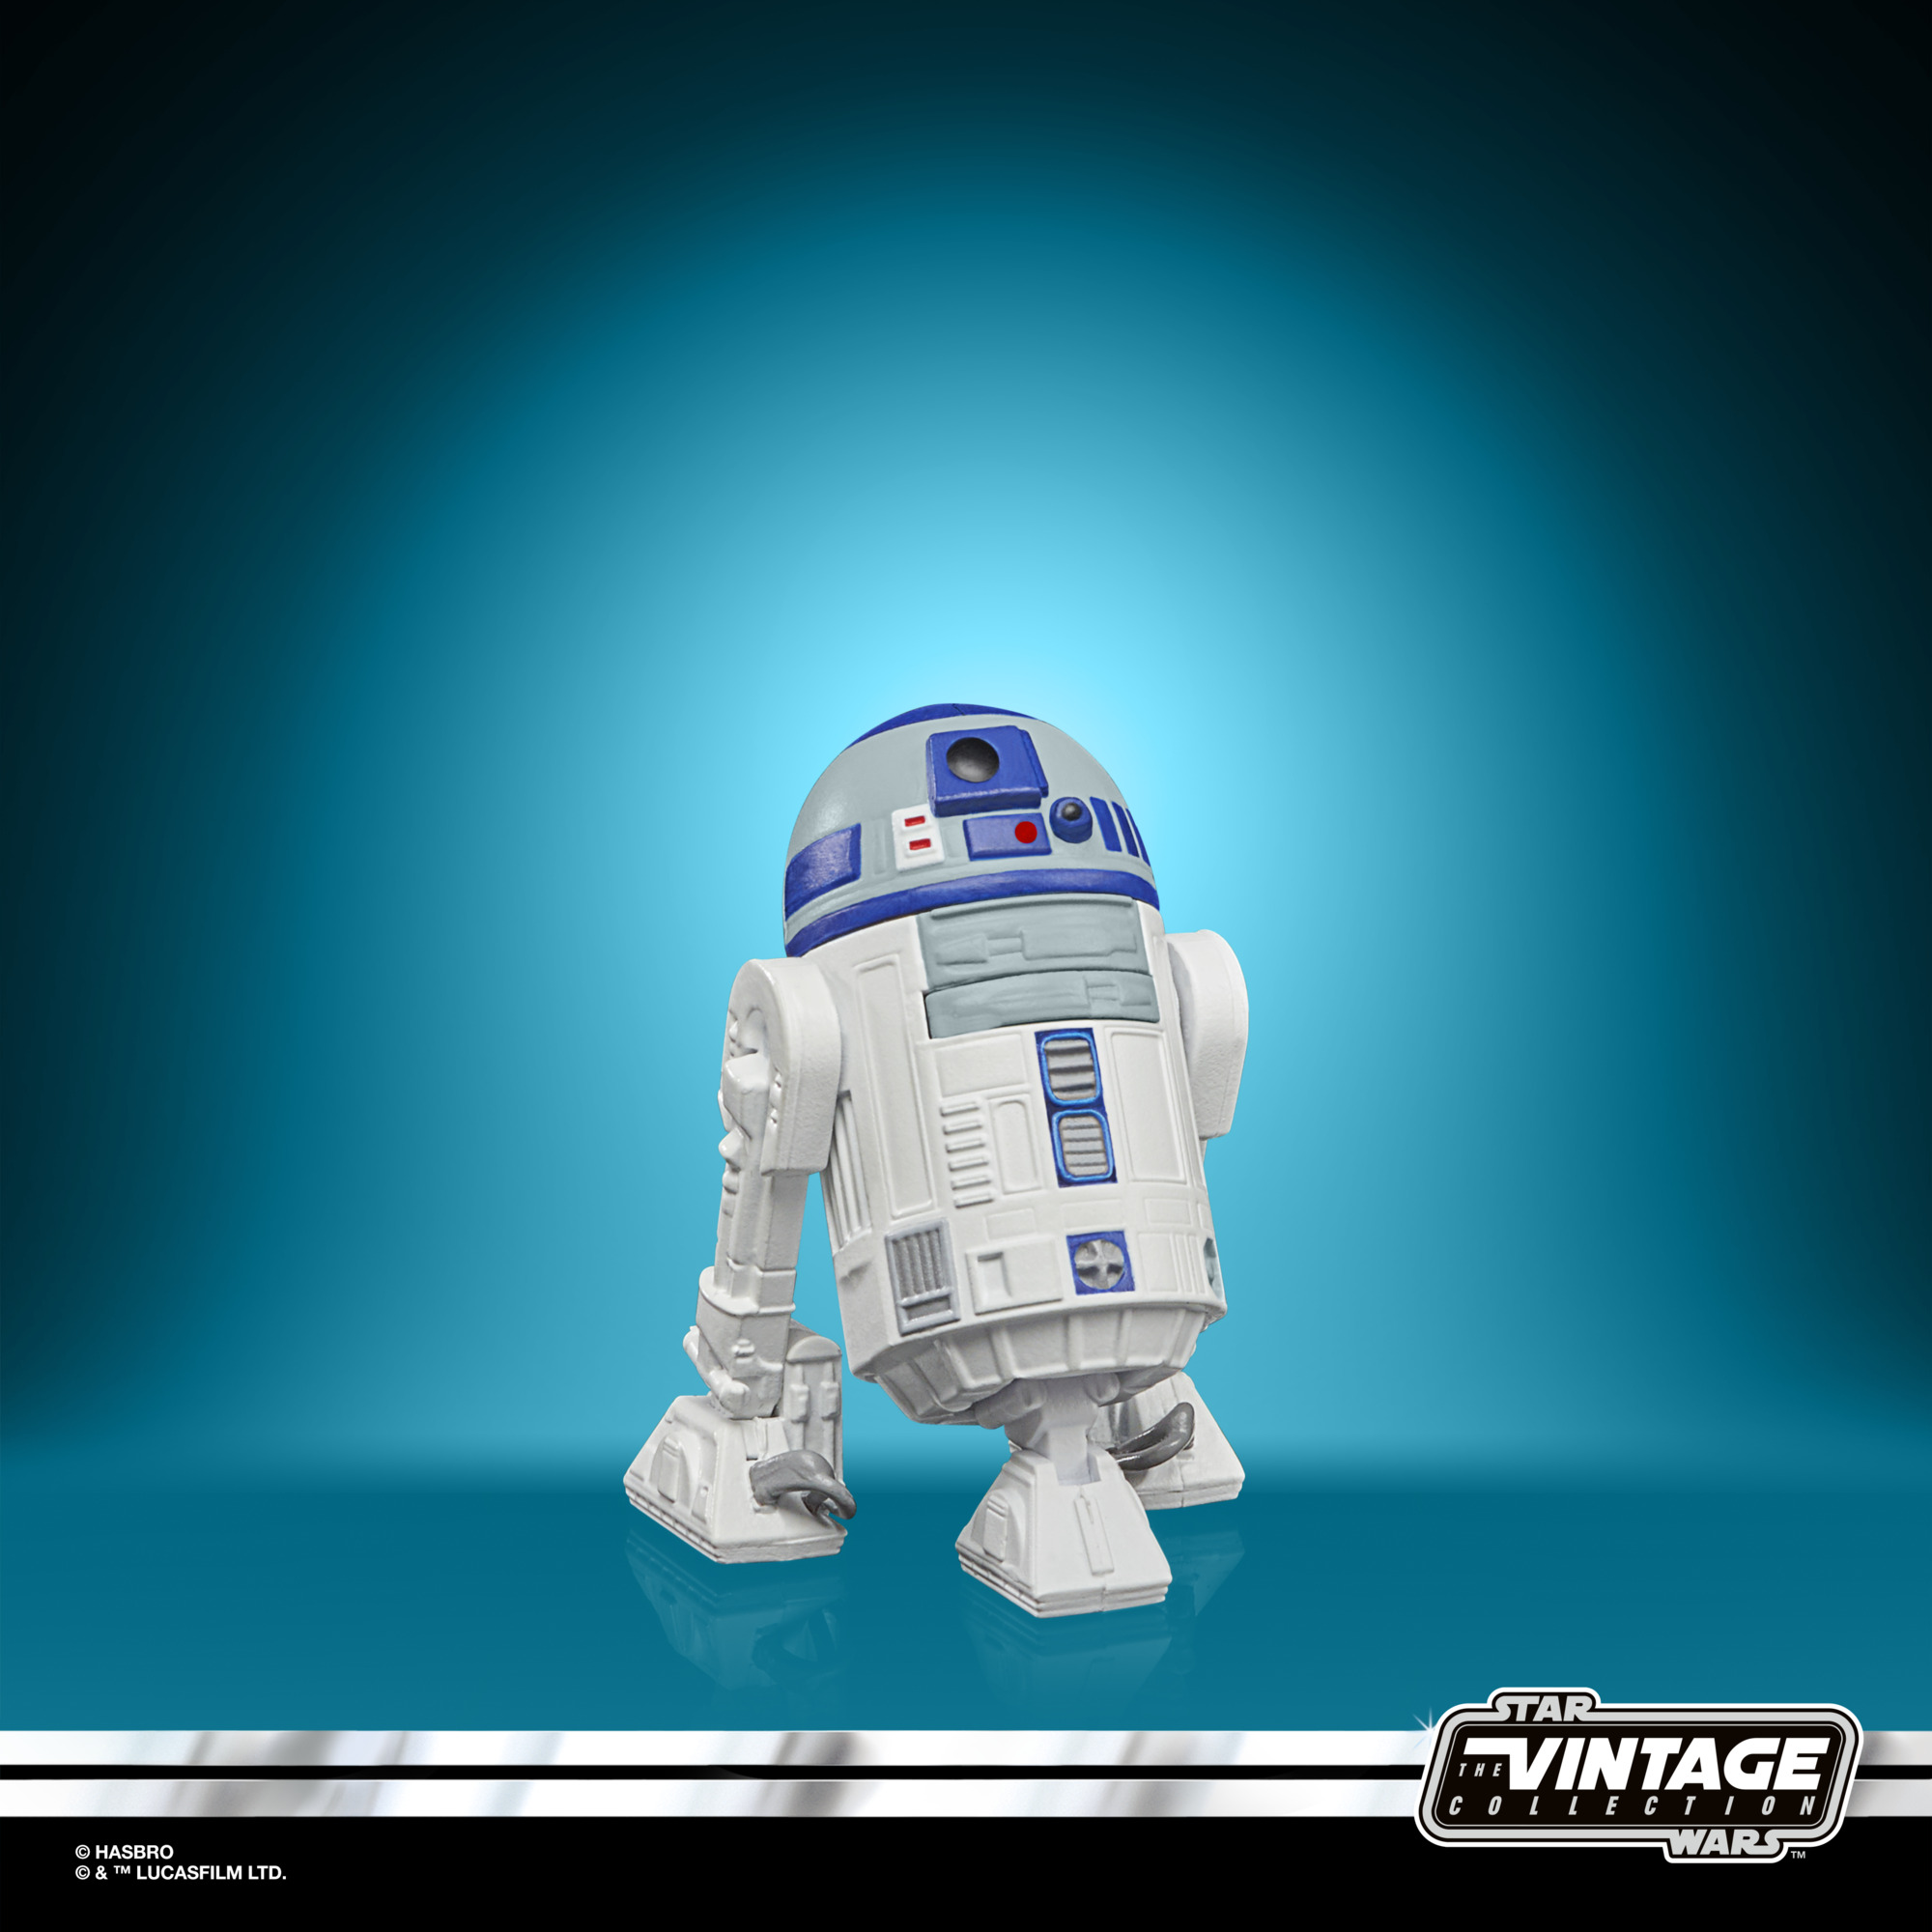 Star Wars: Droids Vintage Collection Actionfigur 2021 Artoo-Detoo (R2-D2) 10 cm F53105L00 5010993954407